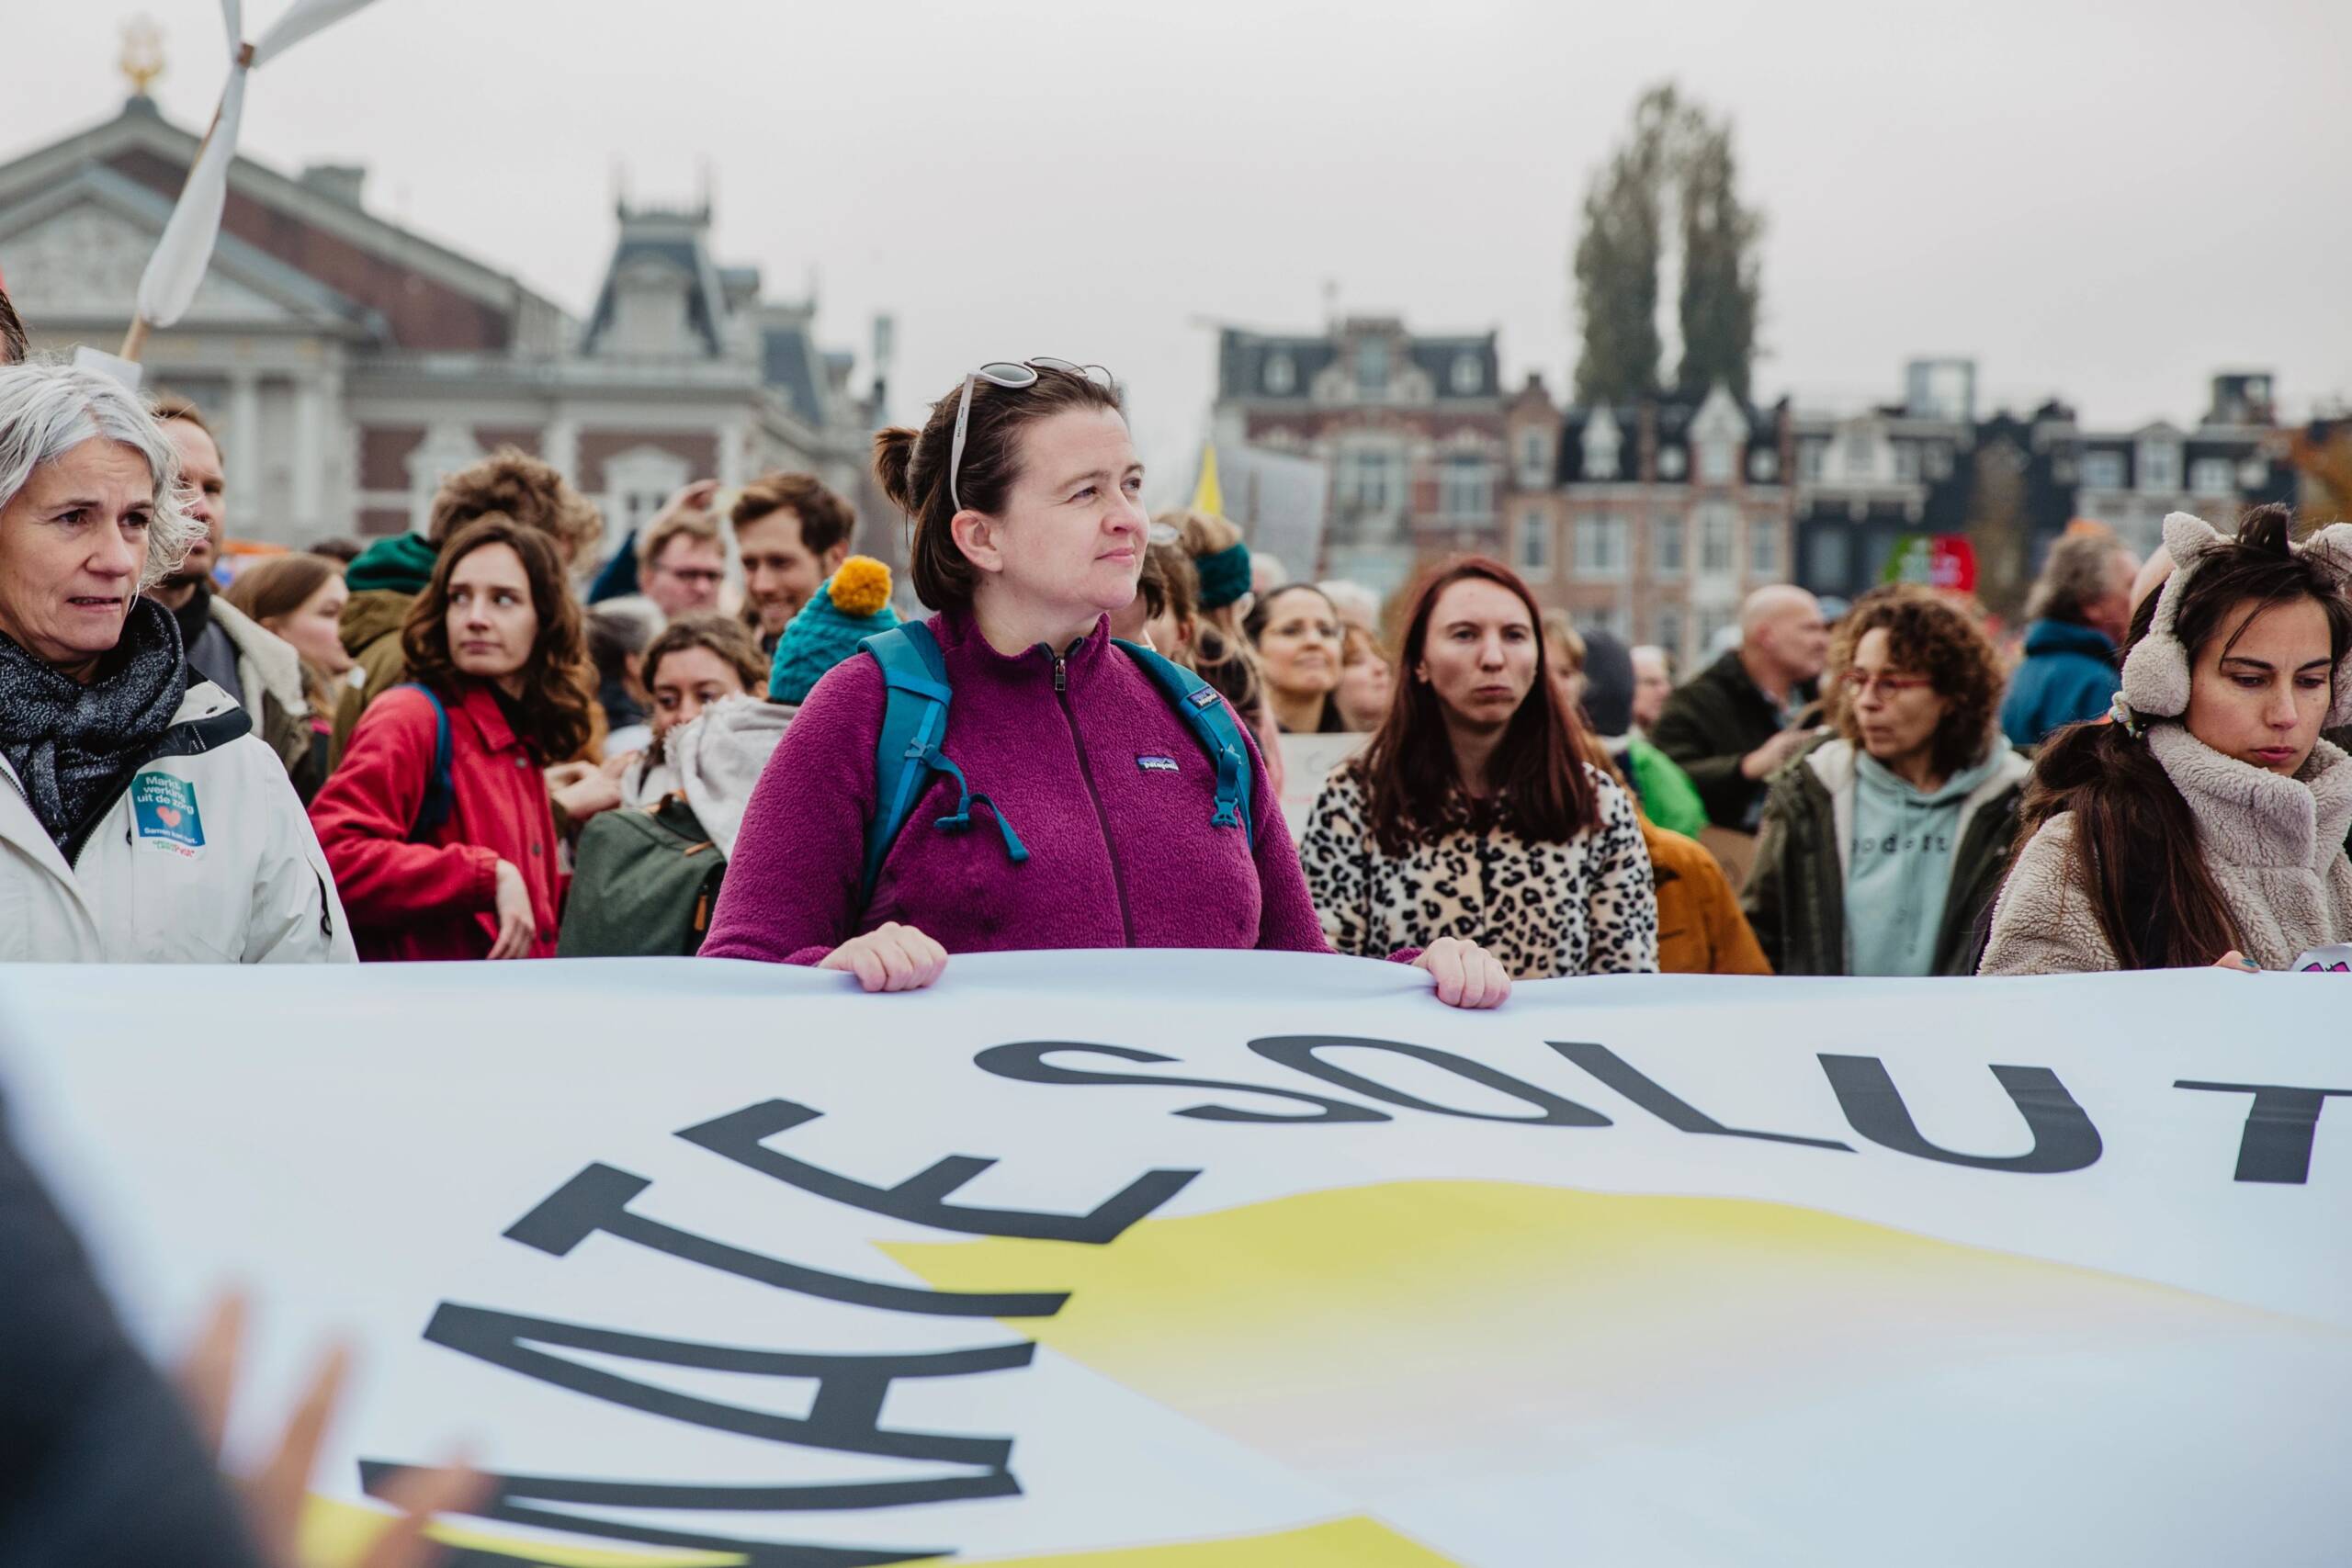 Ámsterdam, Países Bajos, 12 de noviembre: 350.org y Fossielvrij NL convocaron a potenciar las energías renovables en la Movilización por el Clima que batió récords en las calles de Ámsterdam. Más de 85.000 personas se movilizaron. Créditos: Laura Ponchel / Fossielvrij NL